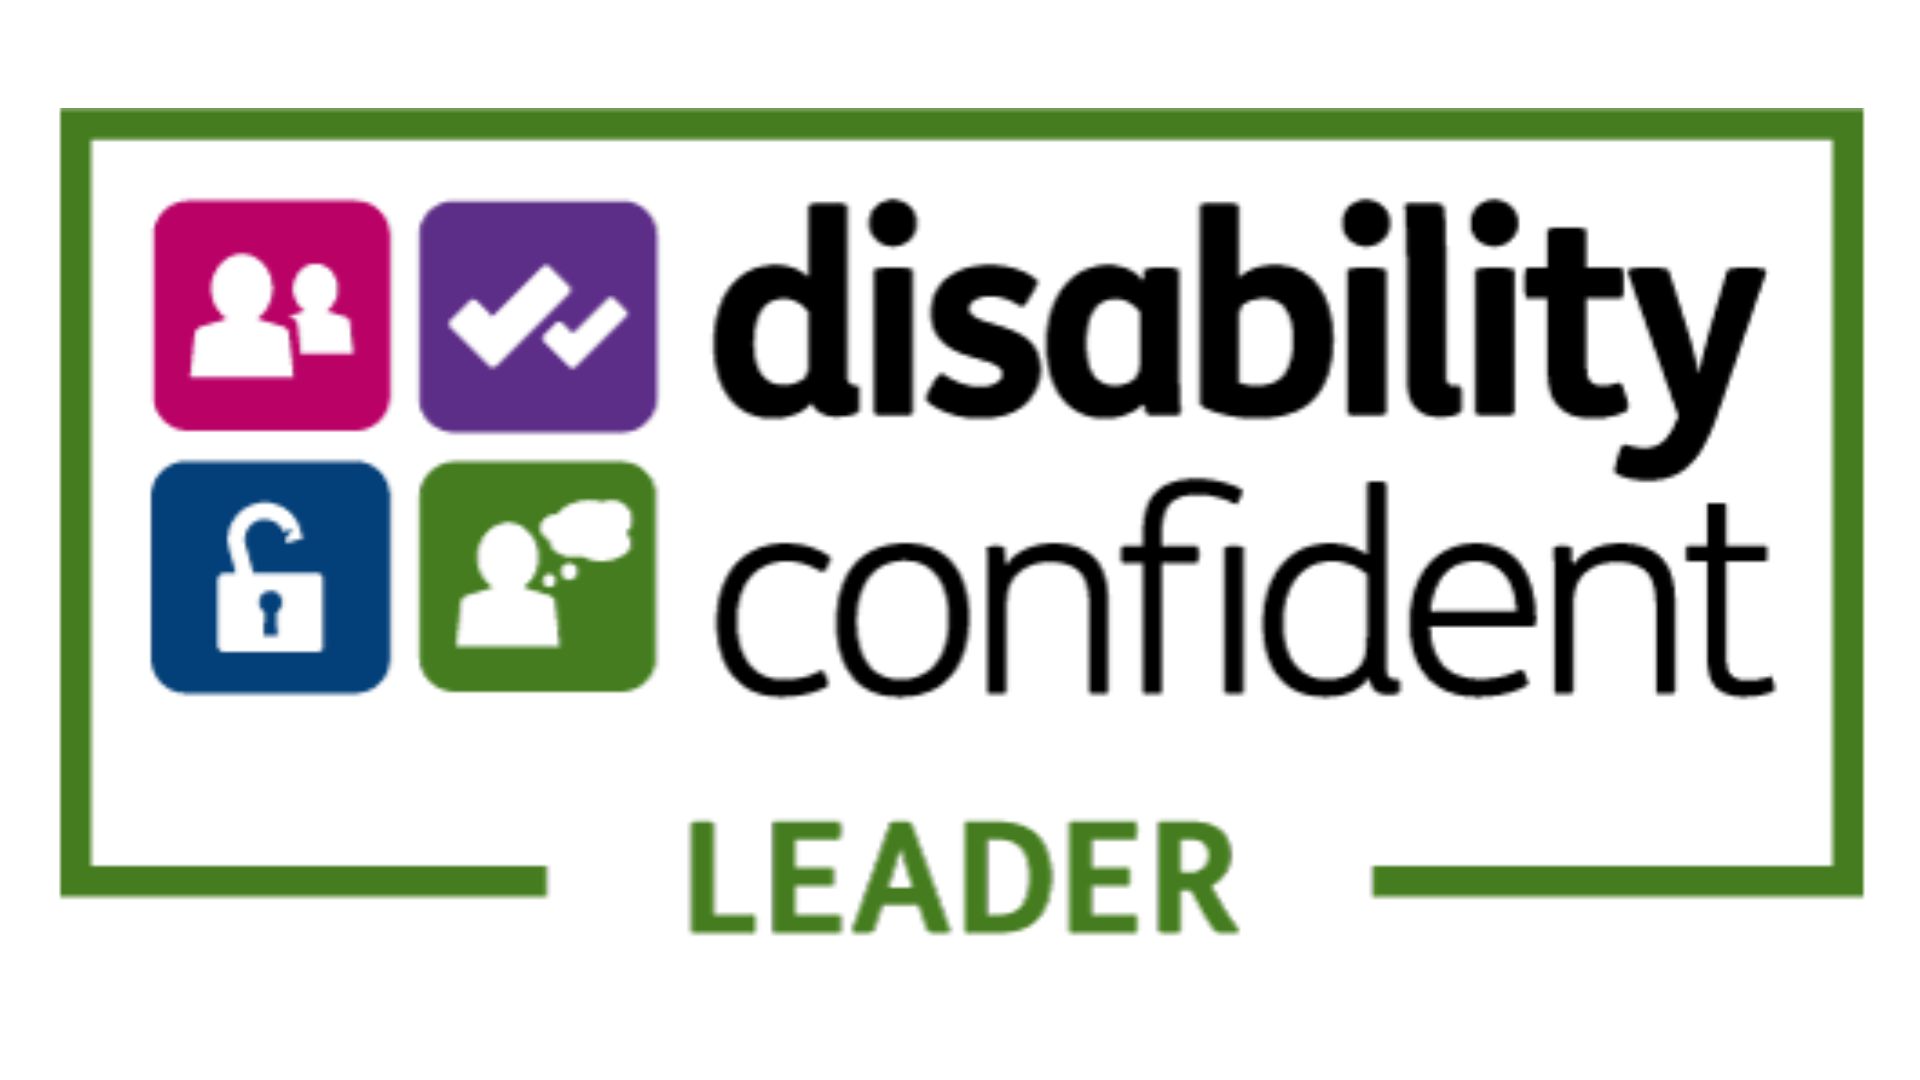 残疾自信领袖标志